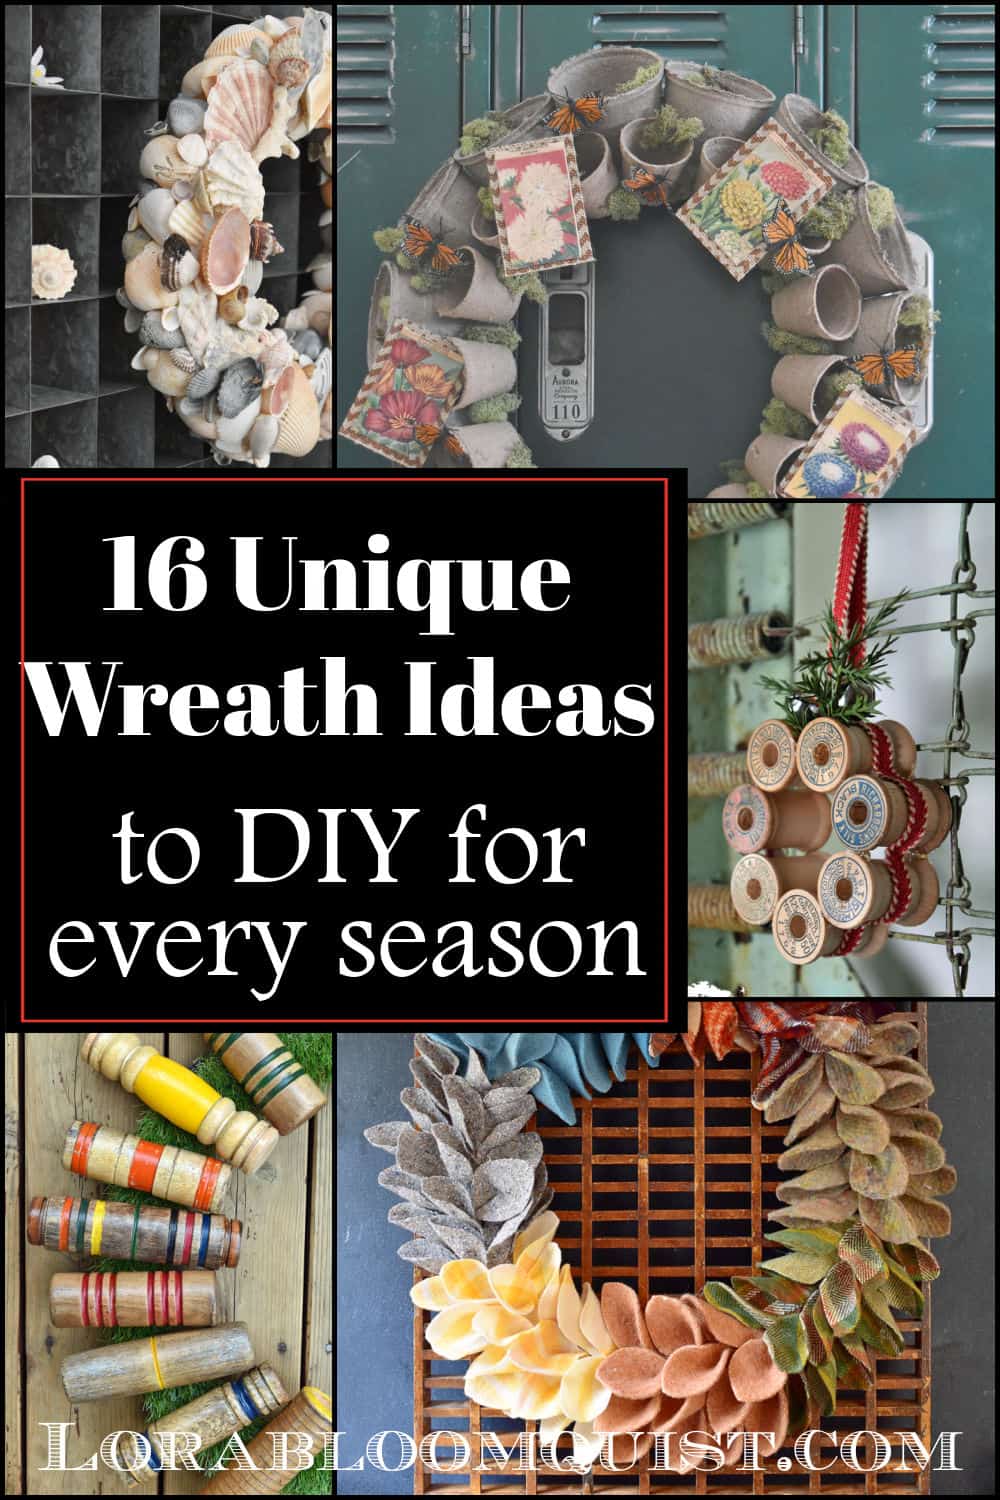 A Year’s Worth of Seasonal DIY Wreath Ideas